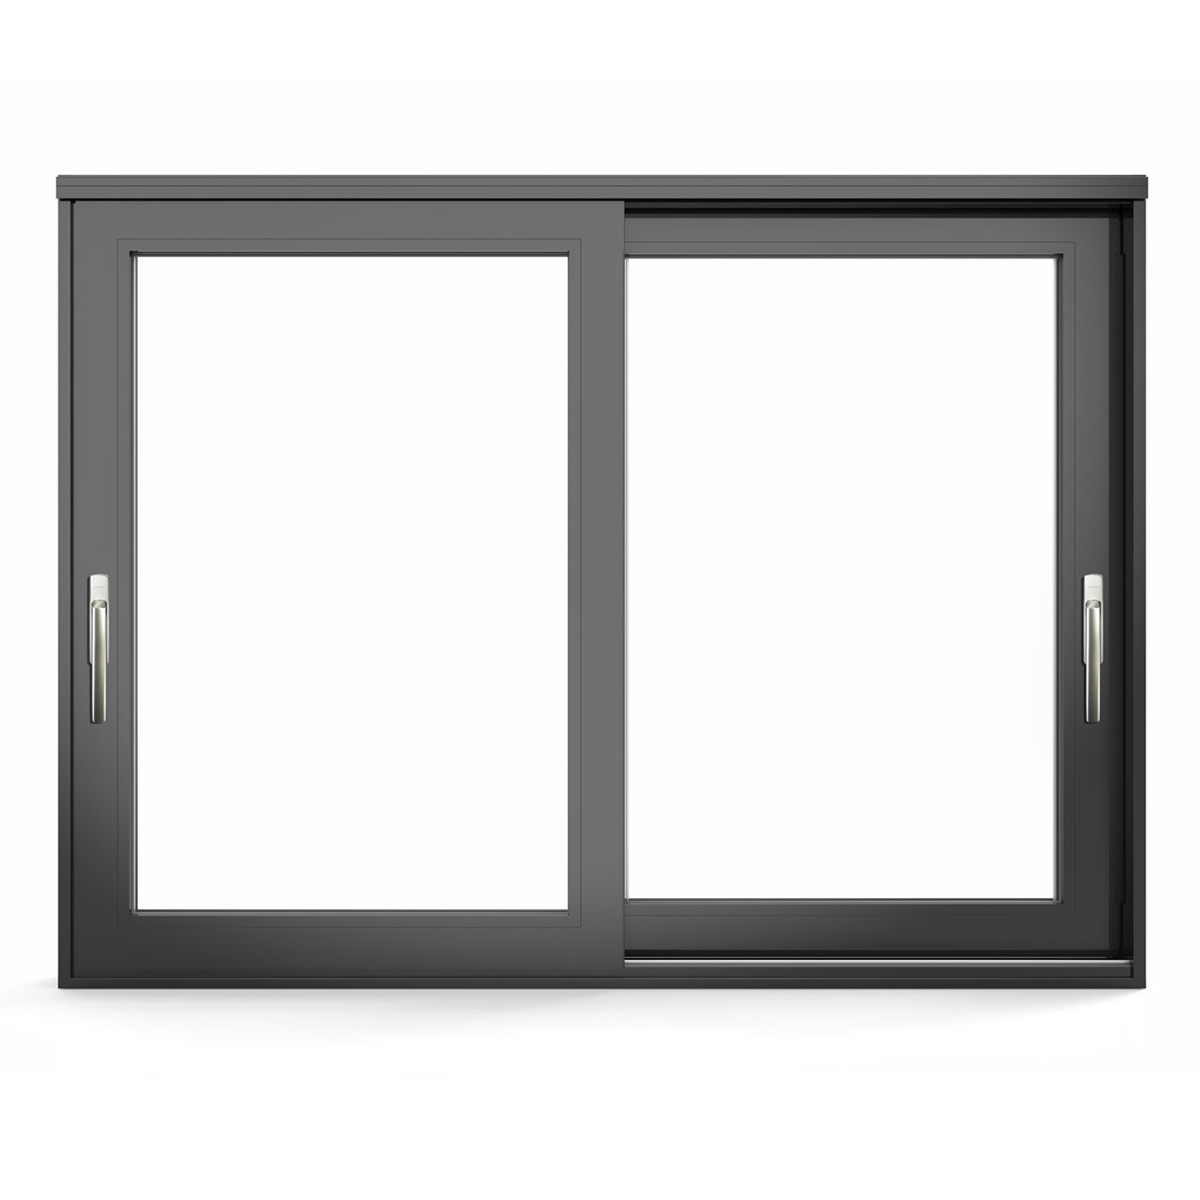 Puerta corrediza y elevable de aluminio serie HD190 con panel de vidrio
